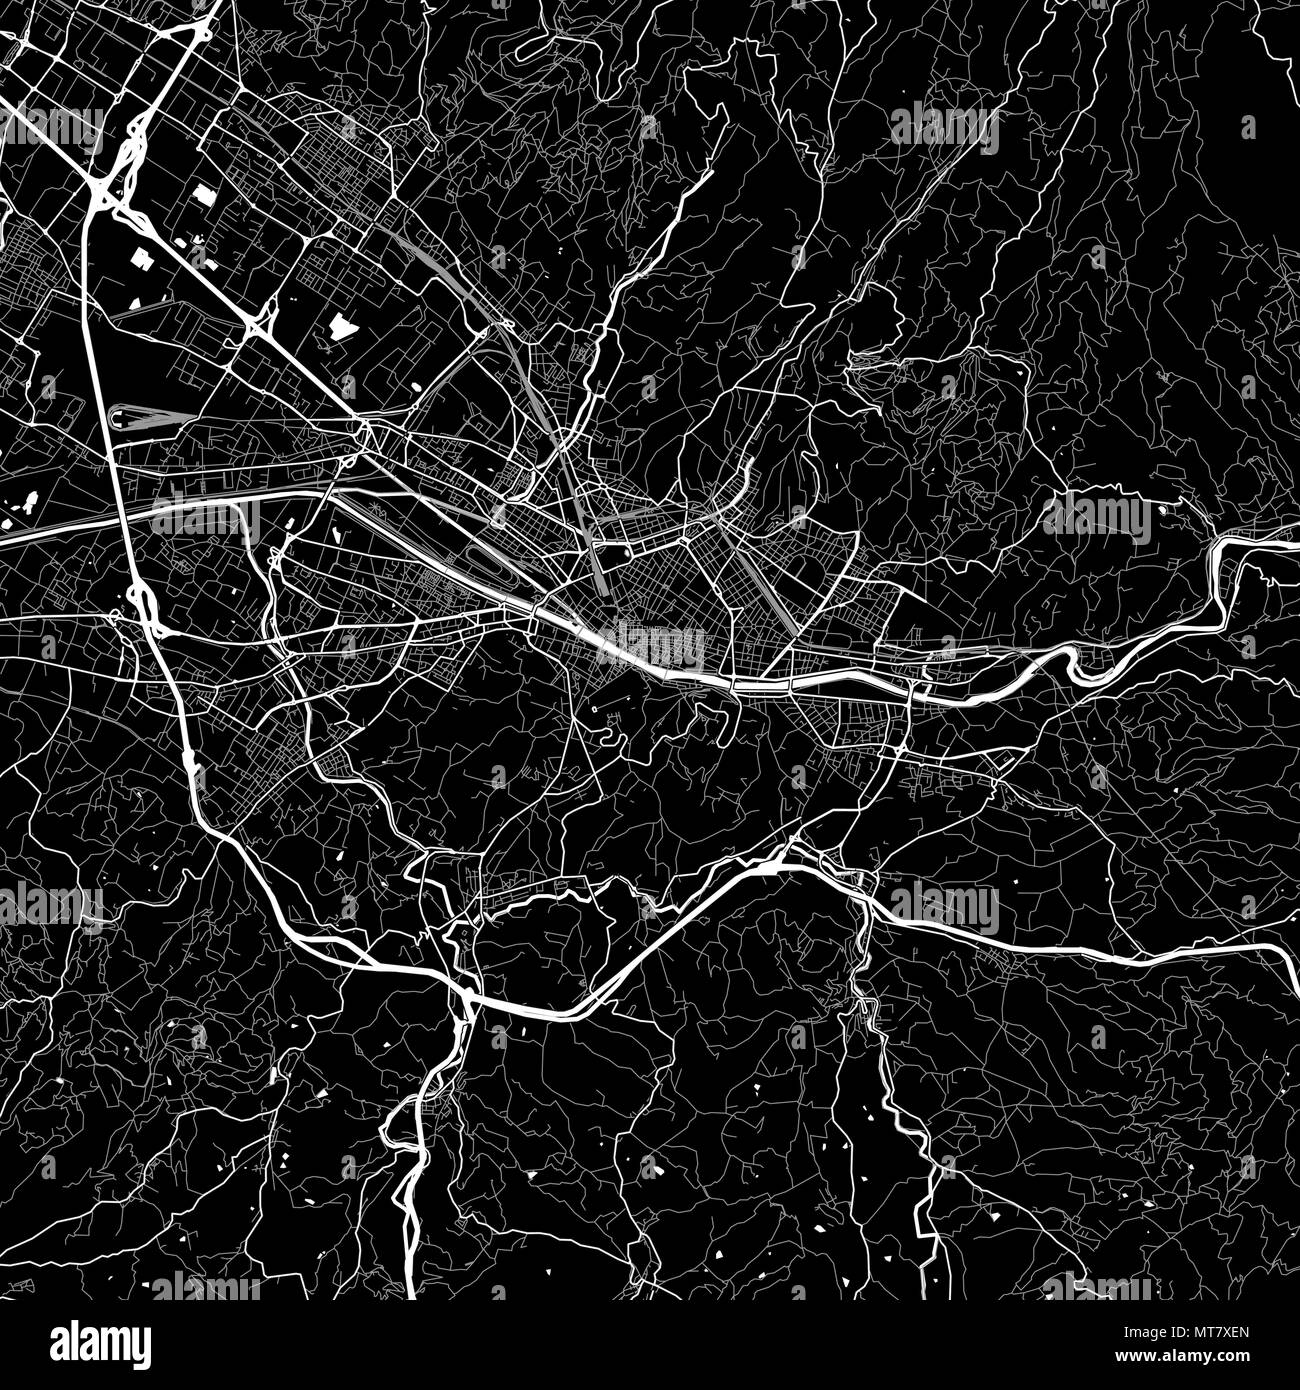 Mapa de la zona de Florencia, Italia. Fondo oscuro versión para infografía y proyectos de comercialización. Este mapa de Florencia, Toscana, contiene hitos típicos Ilustración del Vector